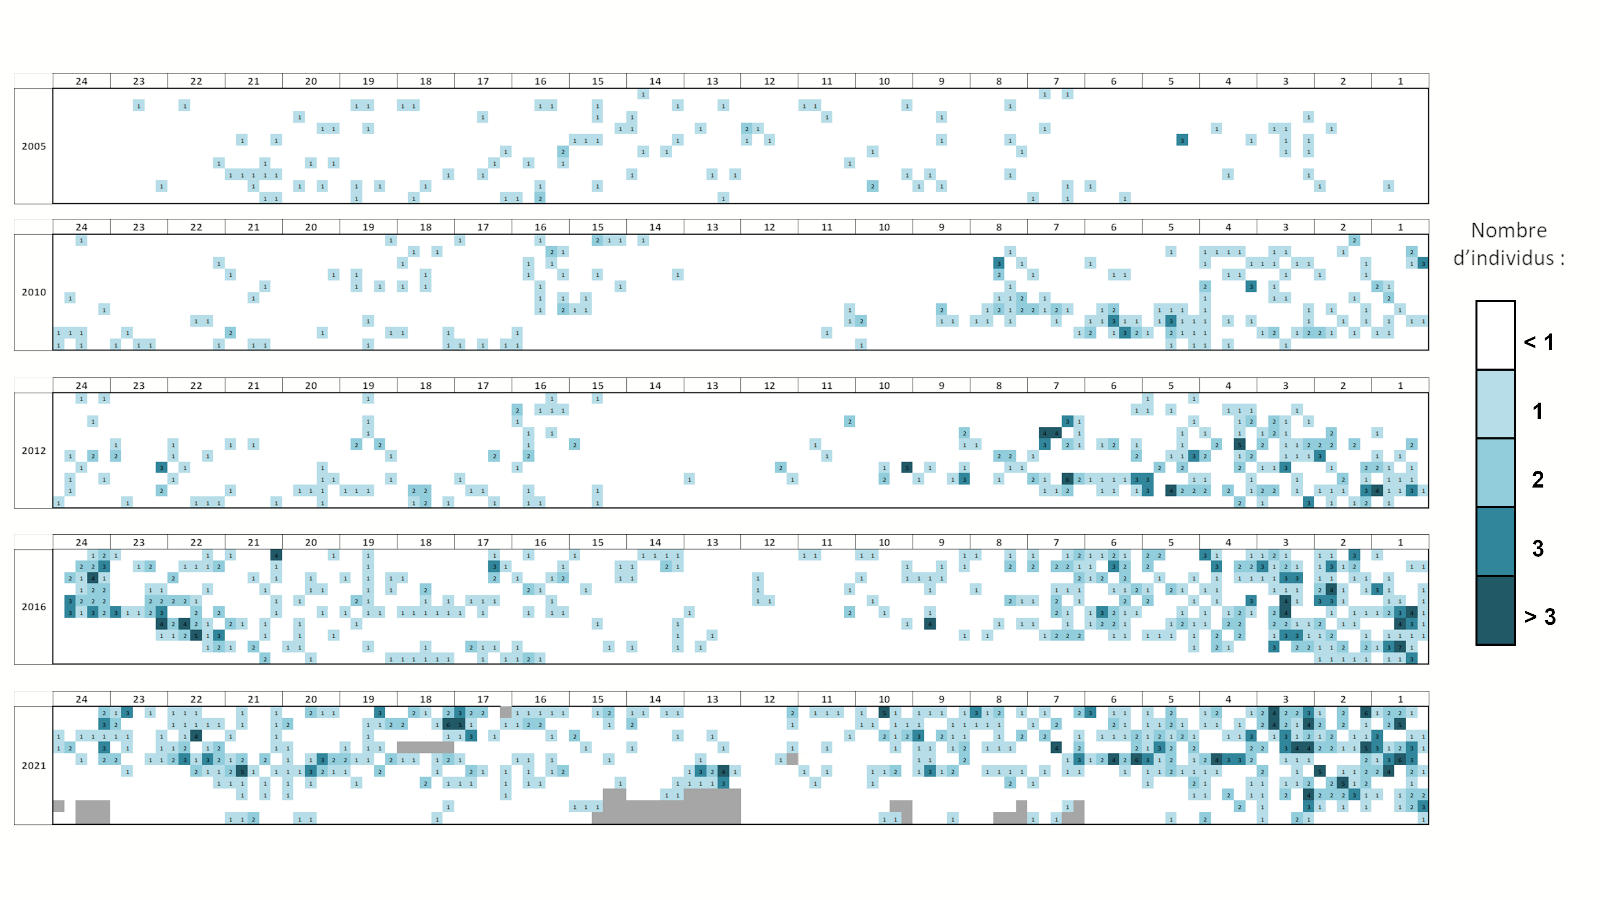 Résultats graphique de la colonisation des gorgones blanches le long du transect permanent entre 2005 et 2021